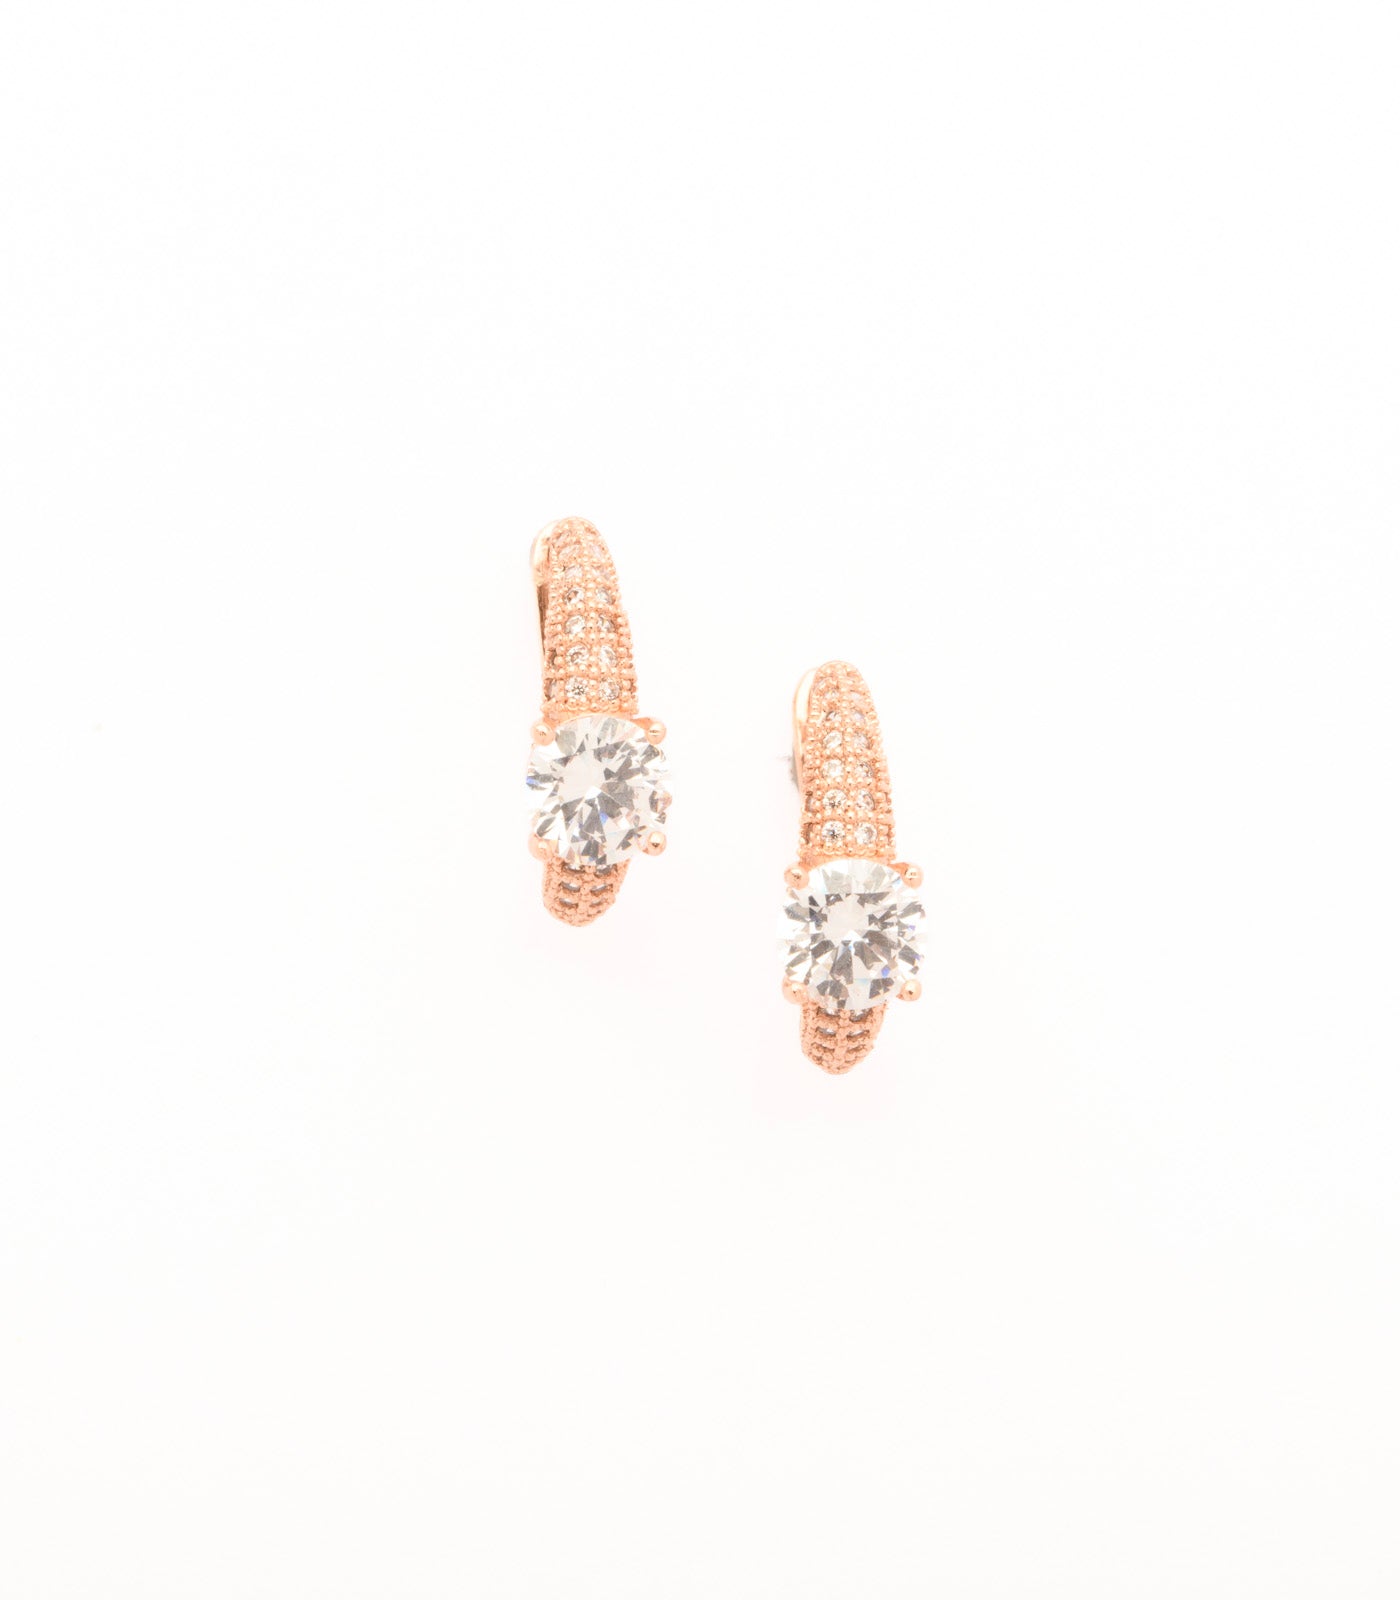 Prismatic Rings Of Shining Brass Earrings (Brass)